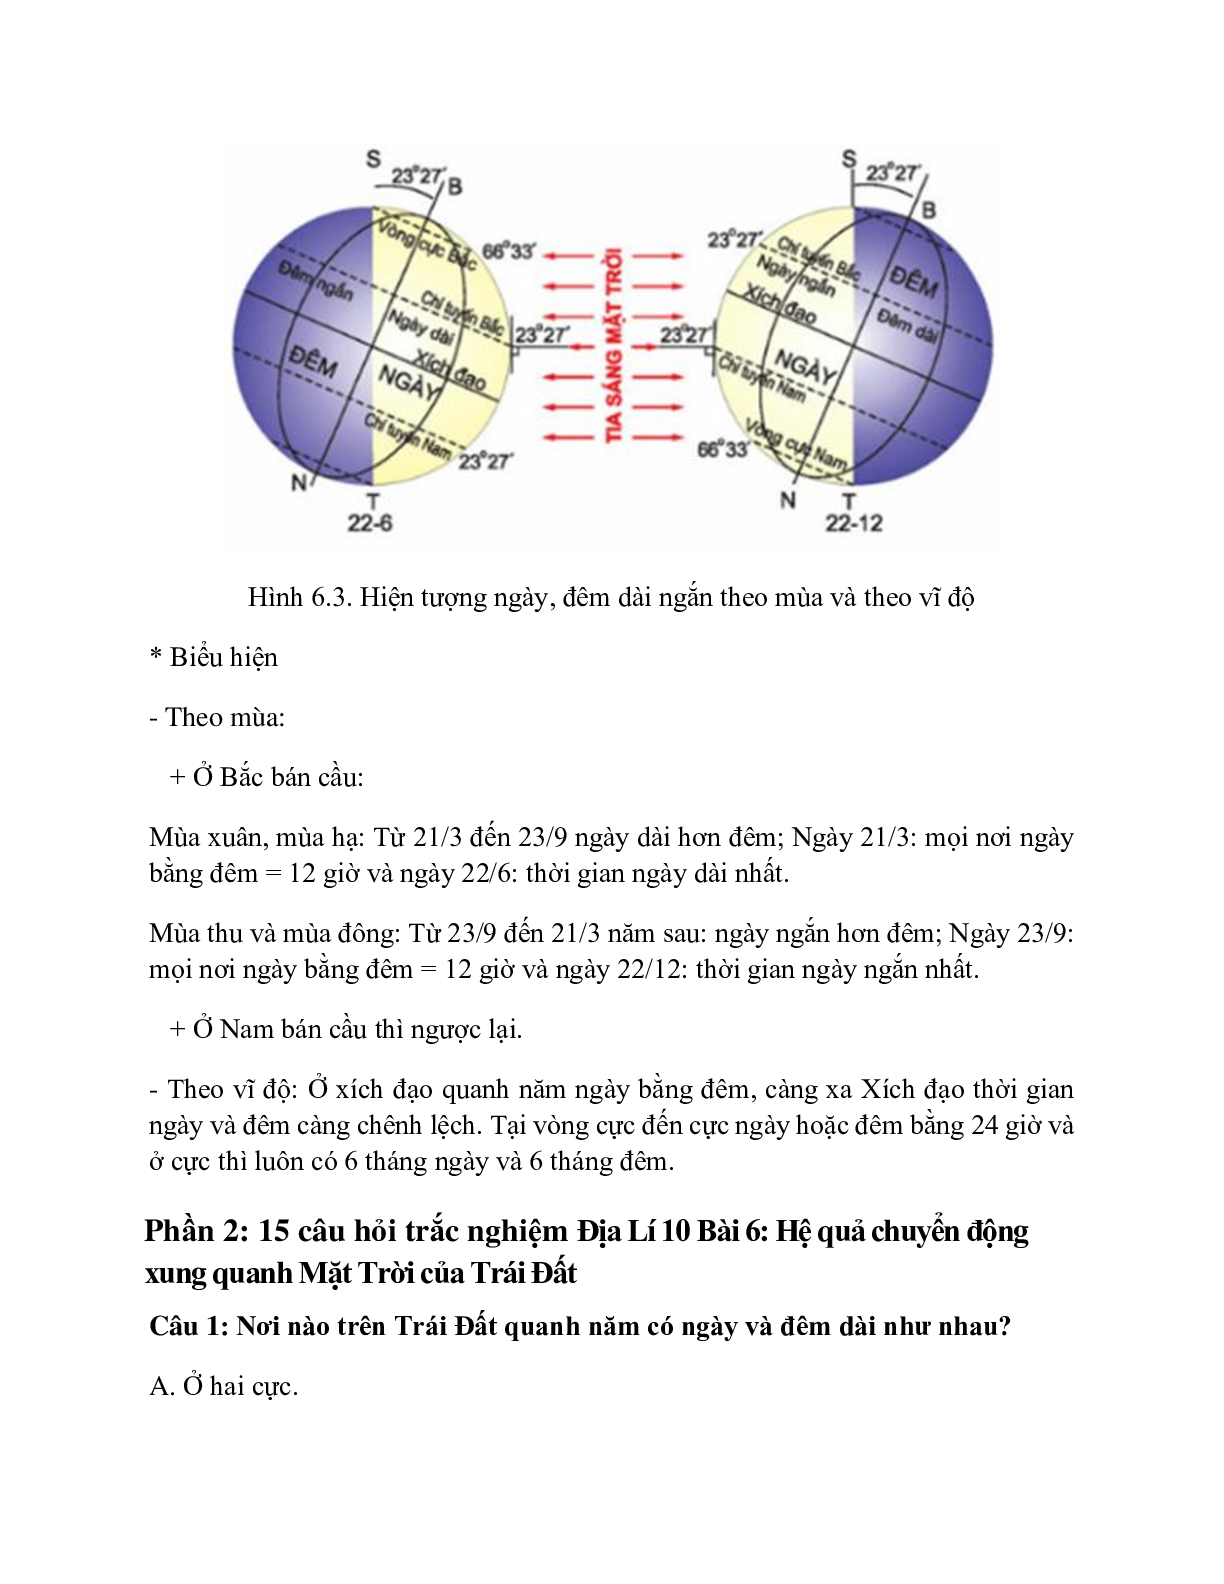 Địa Lí 10 Bài 6 (Lý thuyết và trắc nghiệm): Hệ quả chuyển động xung quanh Mặt Trời của Trái Đất (trang 3)